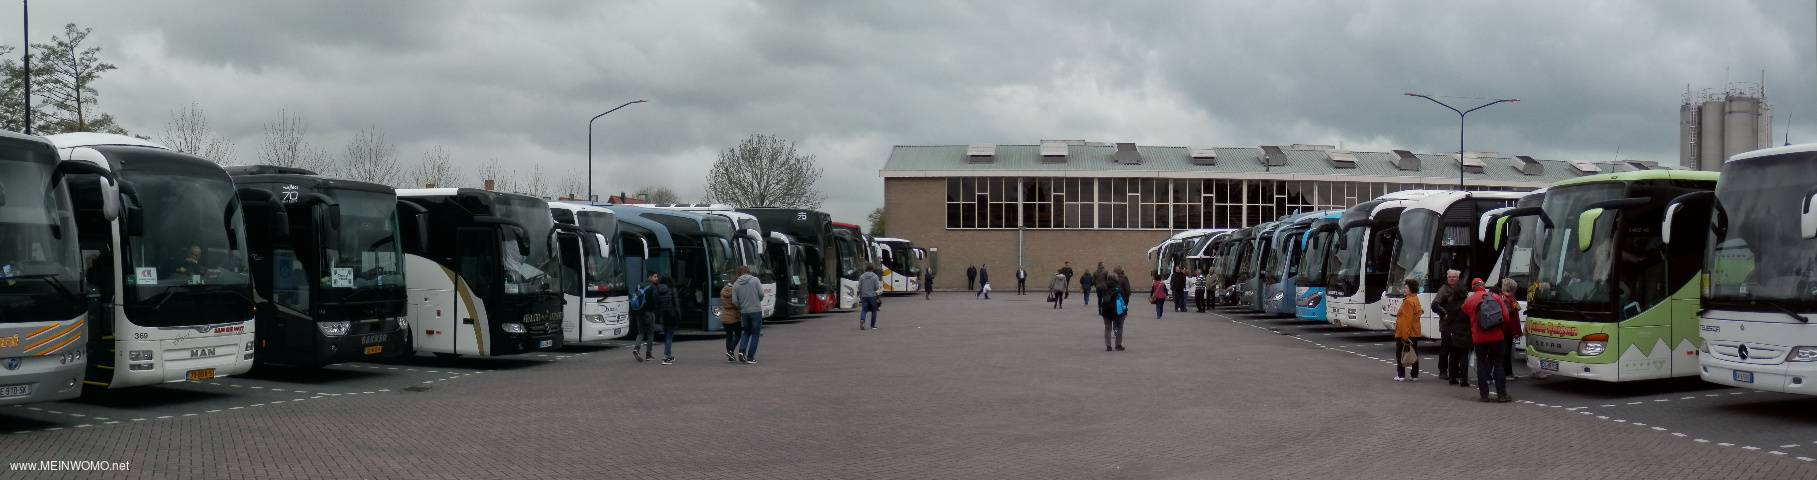  Parcheggio per autobus, a quel tempo si  occupato dellultimo posto con 34 autobus.